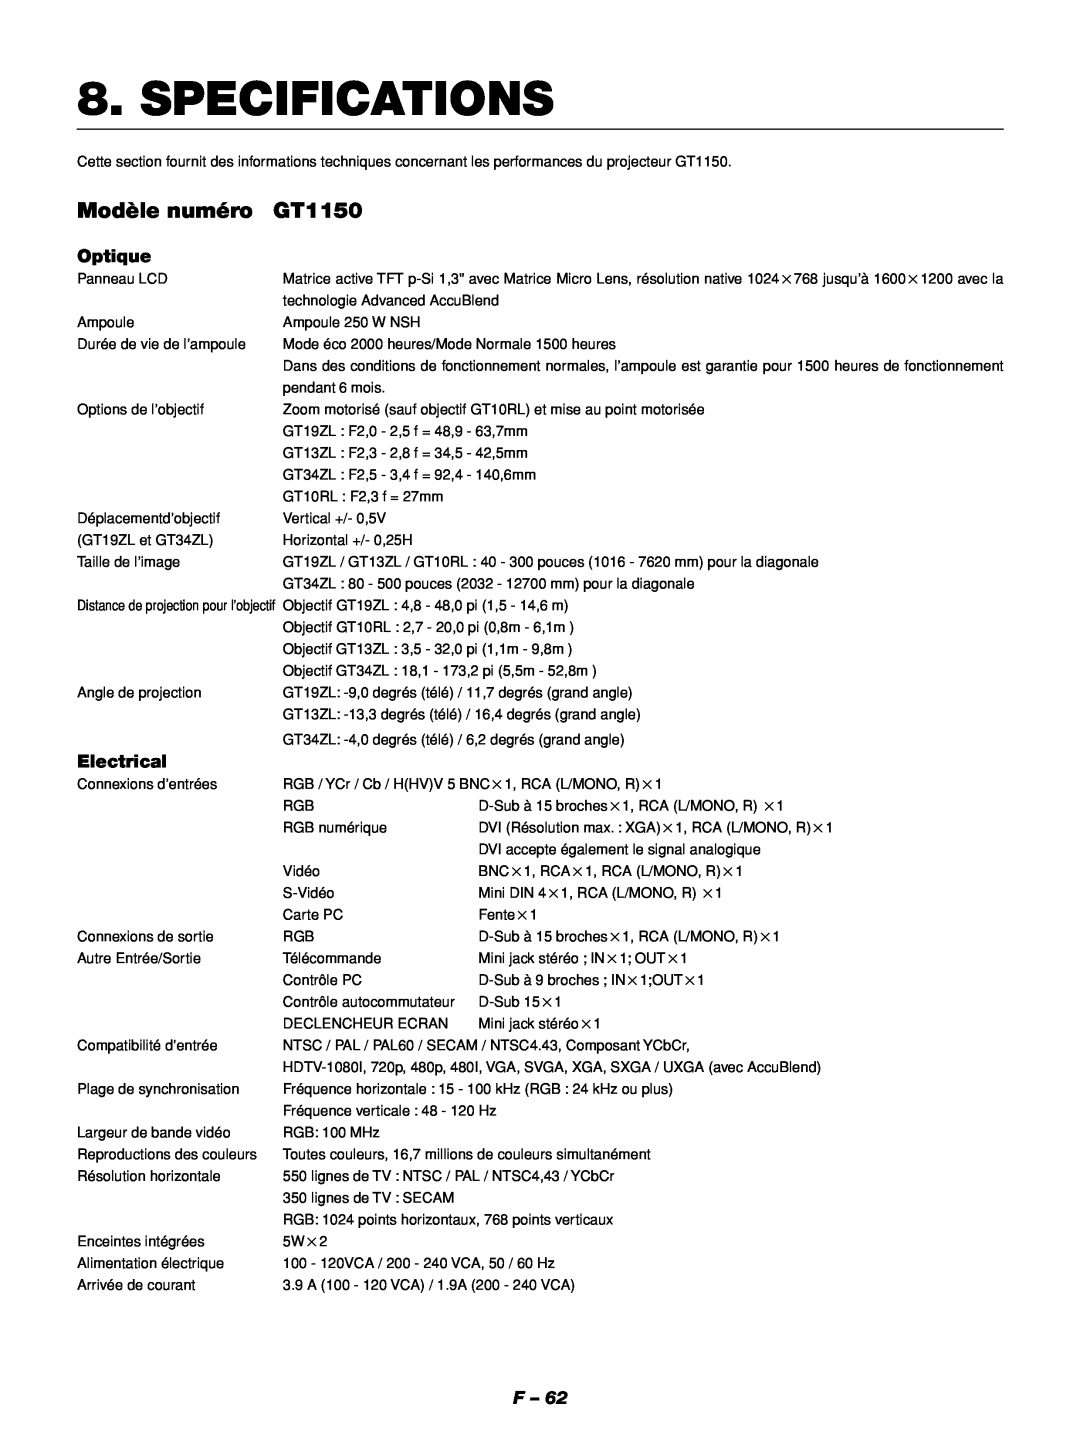 NEC GT1150 manuel dutilisation Specifications, Modèle numéro, Optique, Electrical 